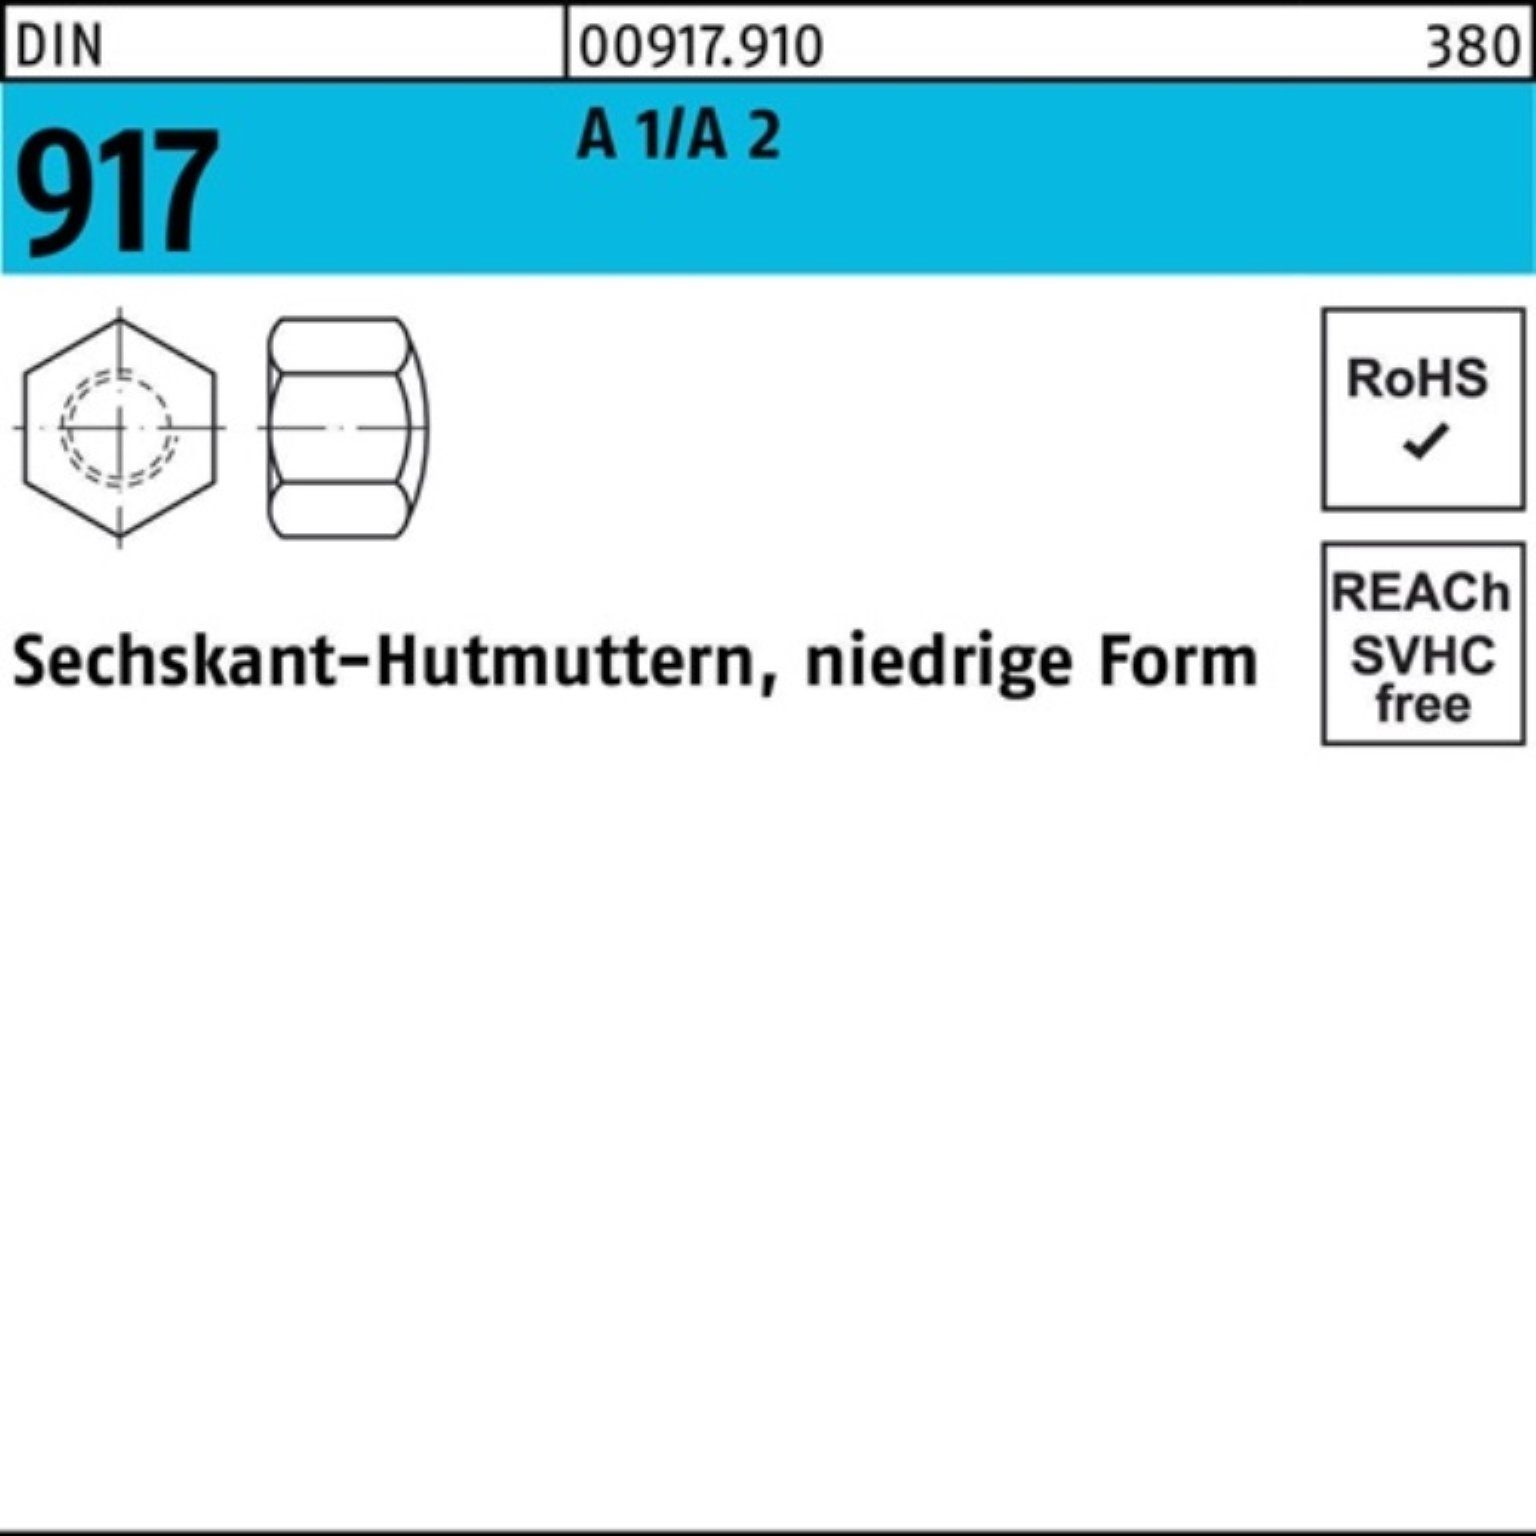 Reyher Hutmutter 100er Pack Sechskanthutmutter 917 50 DIN A 2 FormM8 Stüc 1/A niedrige